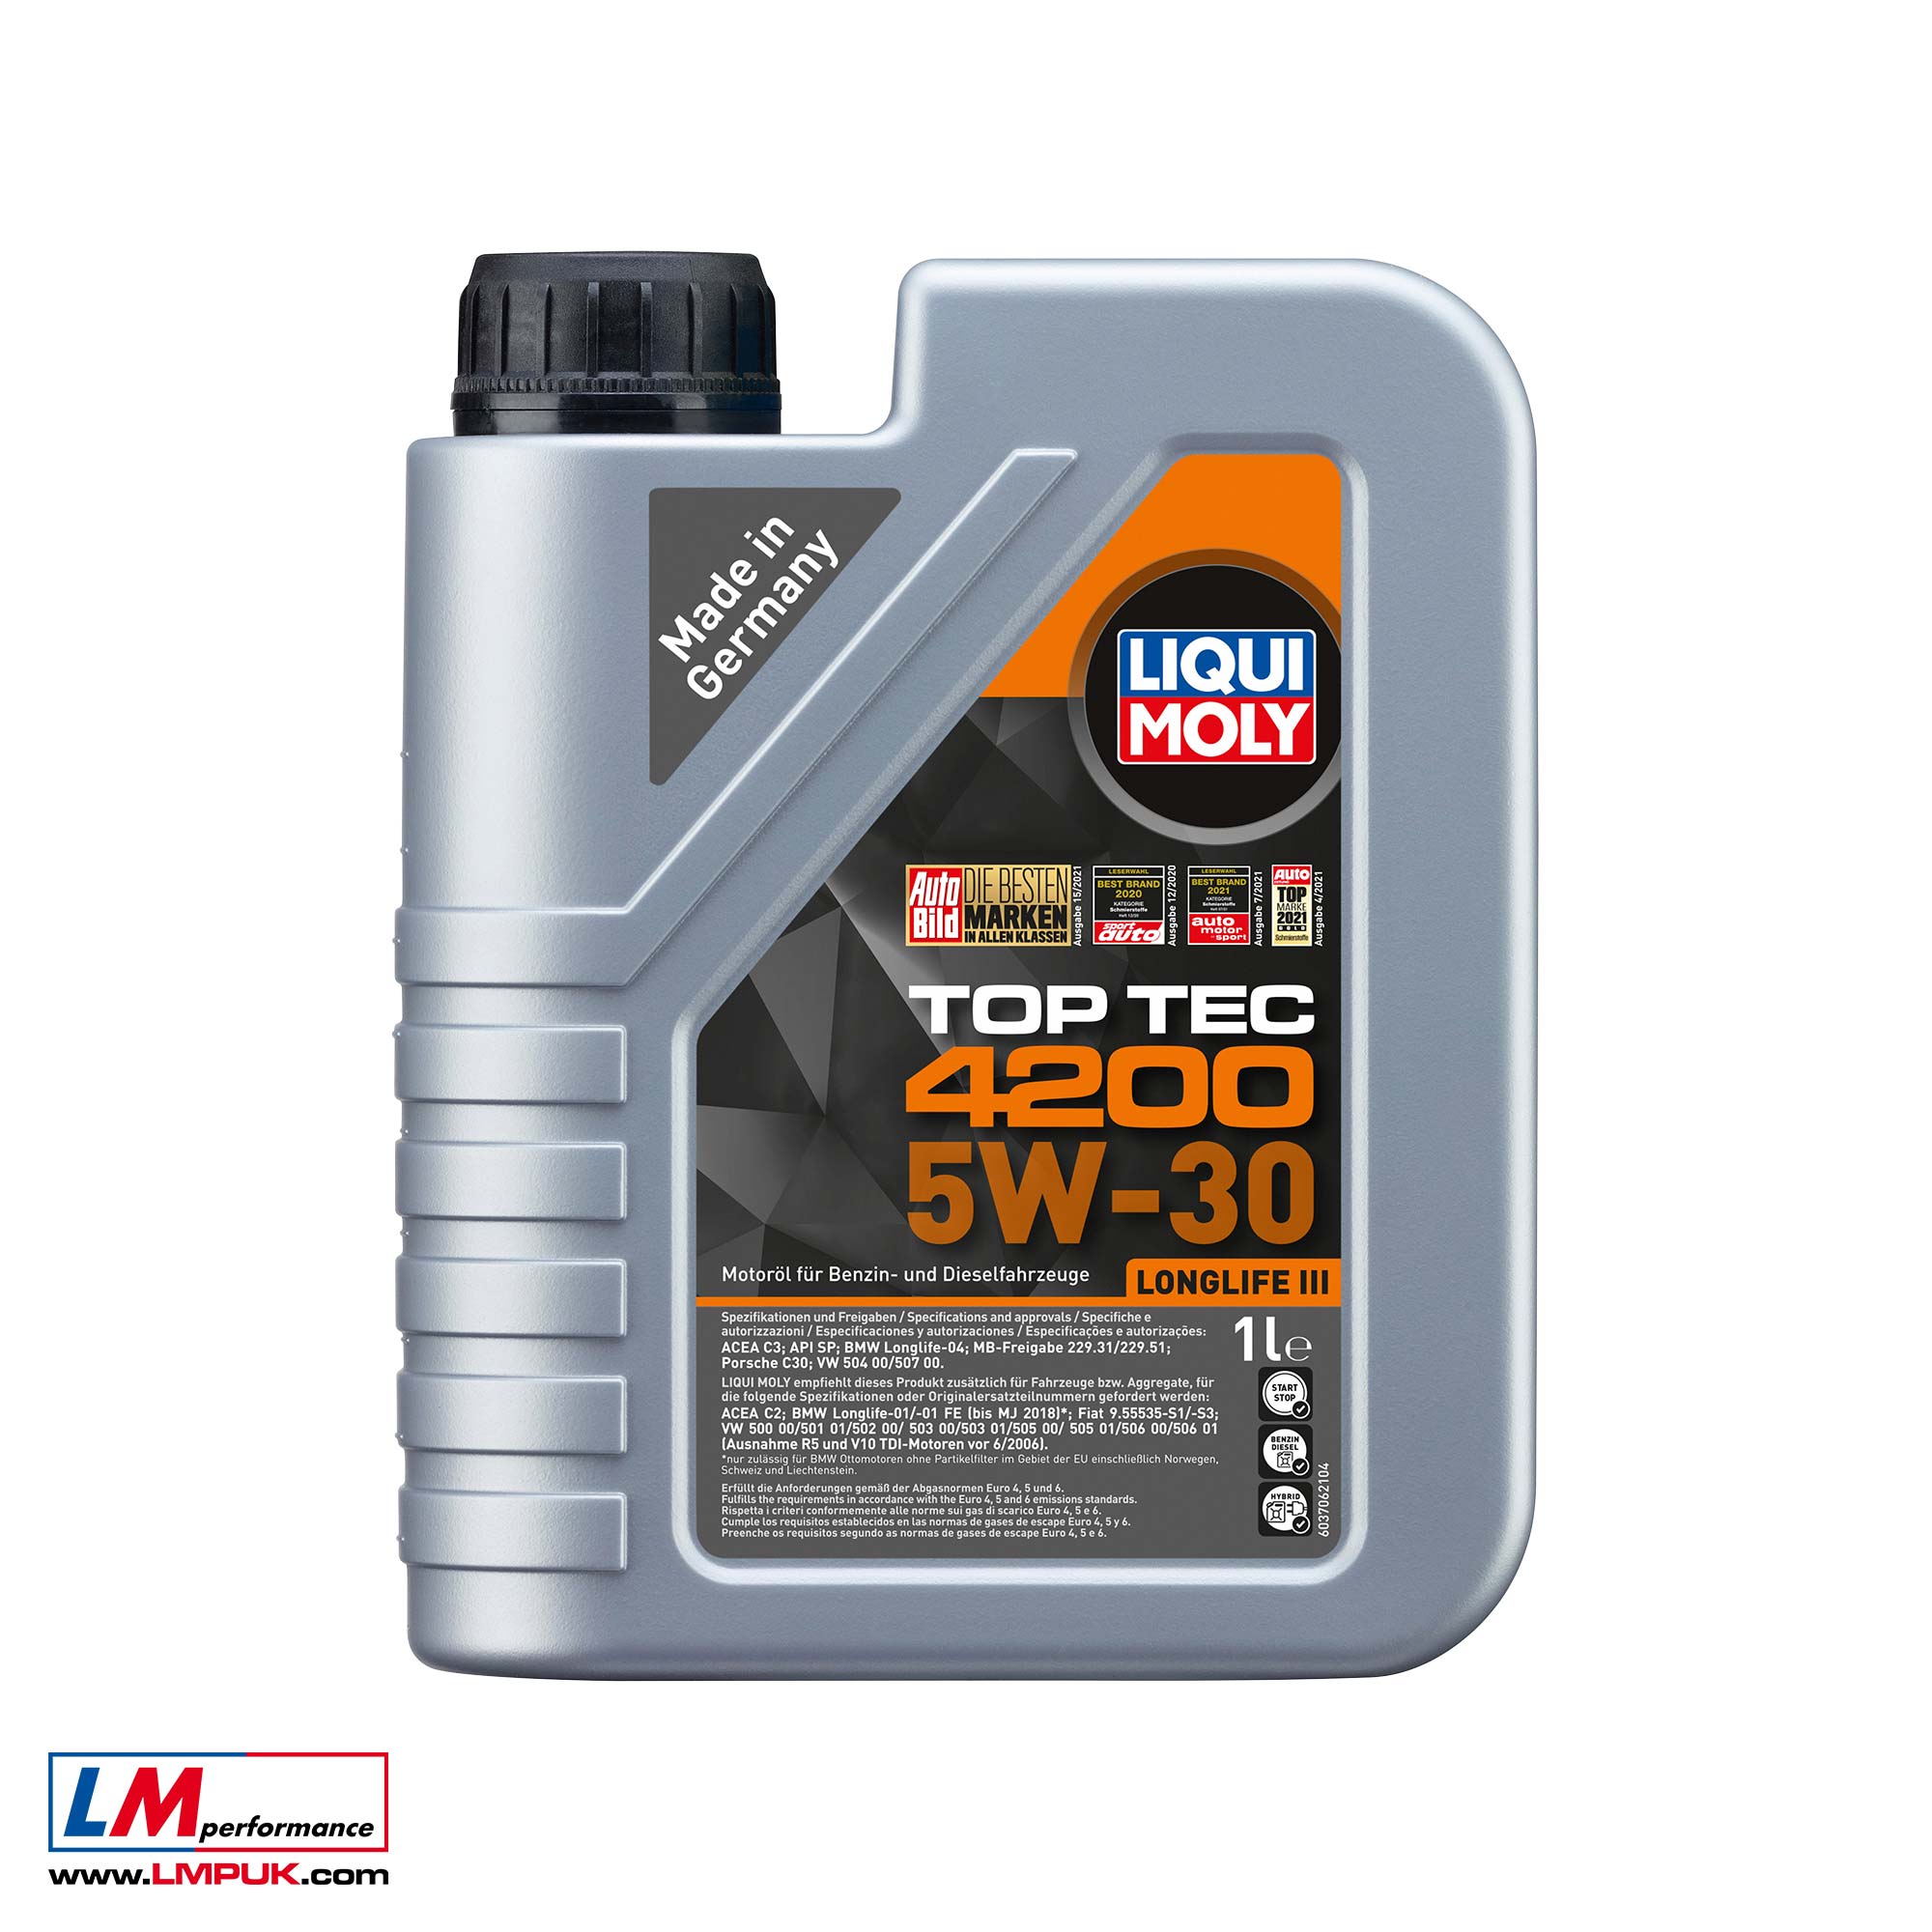 Liqui Moly Top Tec 4200 5W-30 (5L) - Case of 4